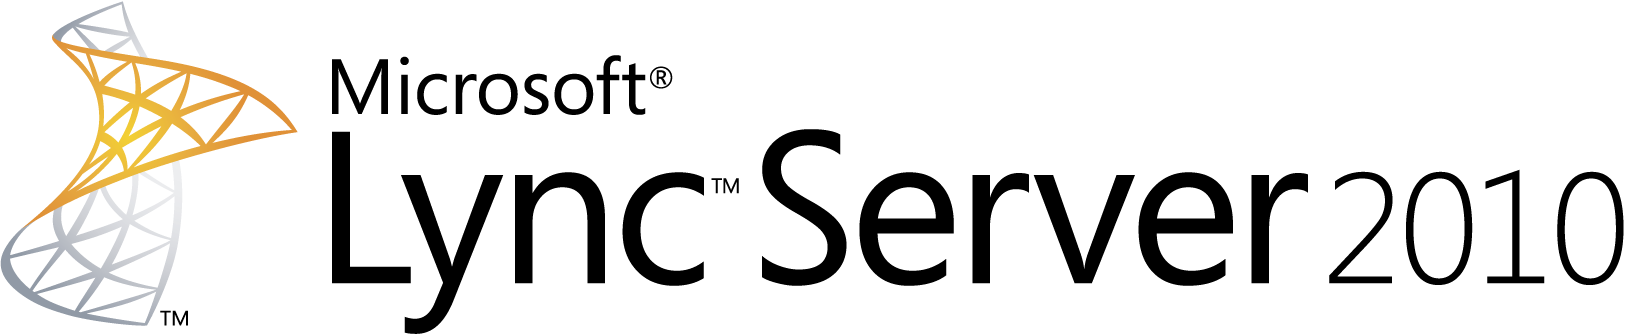 Lync-Server-Logo-2010-Horizontal-Transparent